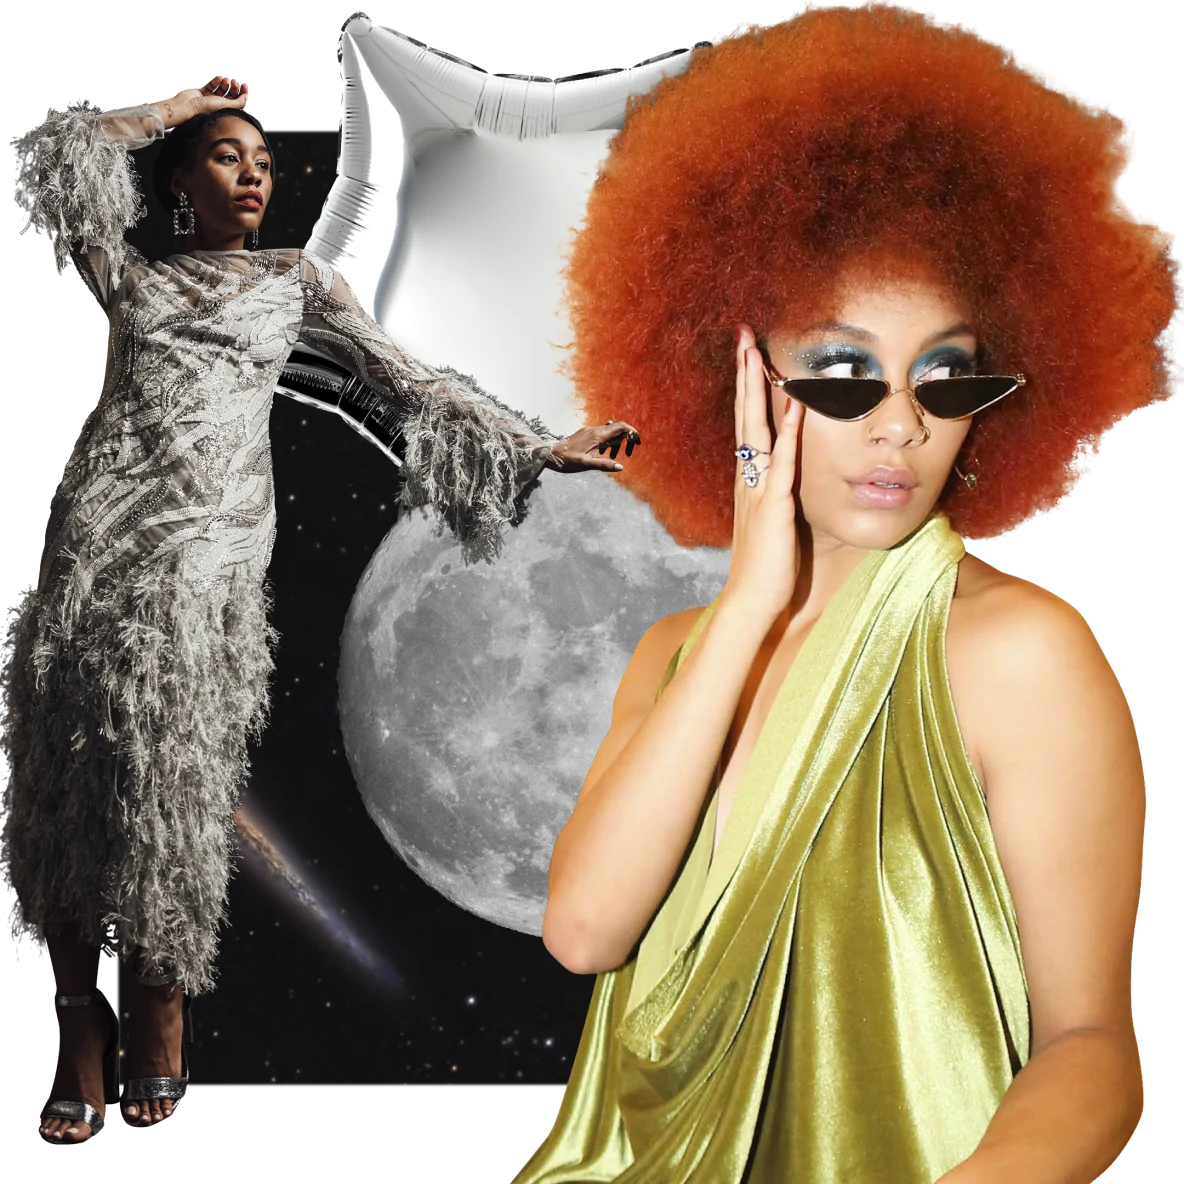 Links eine Schwarze Frau in einem grauen Fransenkleid, die vor einem Vollmond lehnt. Rechts eine Schwarze Frau mit roten Haaren in einem grünen Samtkleid. Im Hintergrund eine Weltraumkulisse mit einem silbernen Sternenballon oben.